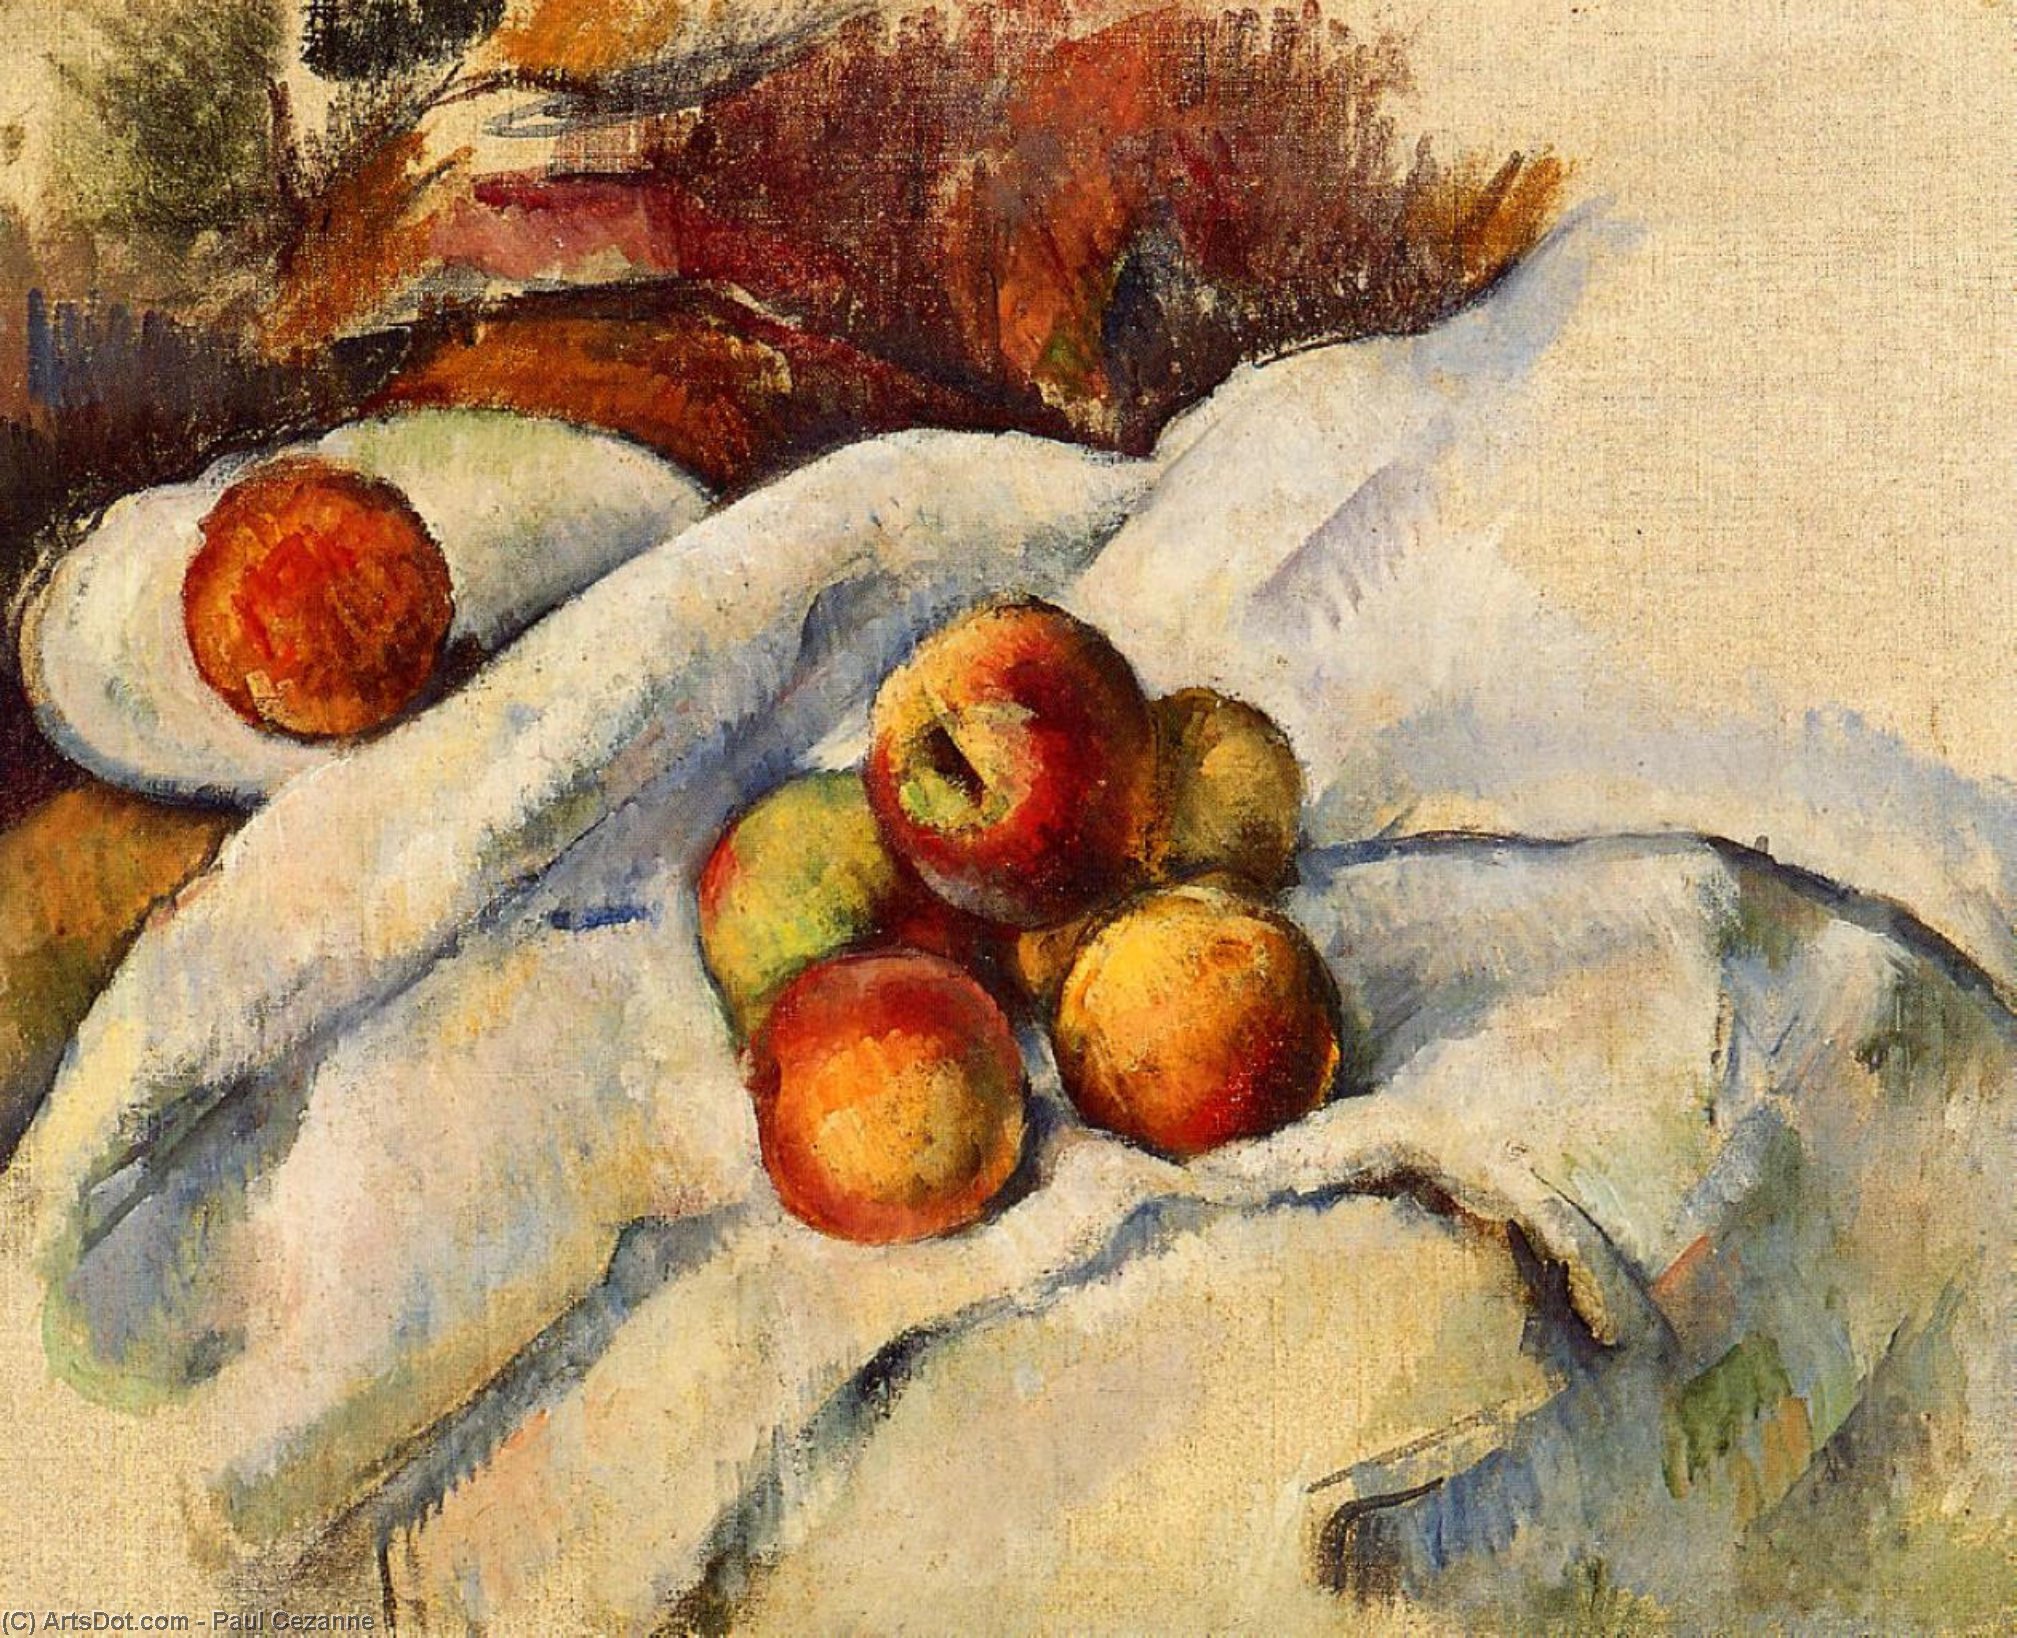 WikiOO.org - Encyclopedia of Fine Arts - Maleri, Artwork Paul Cezanne - Apples on a Sheet